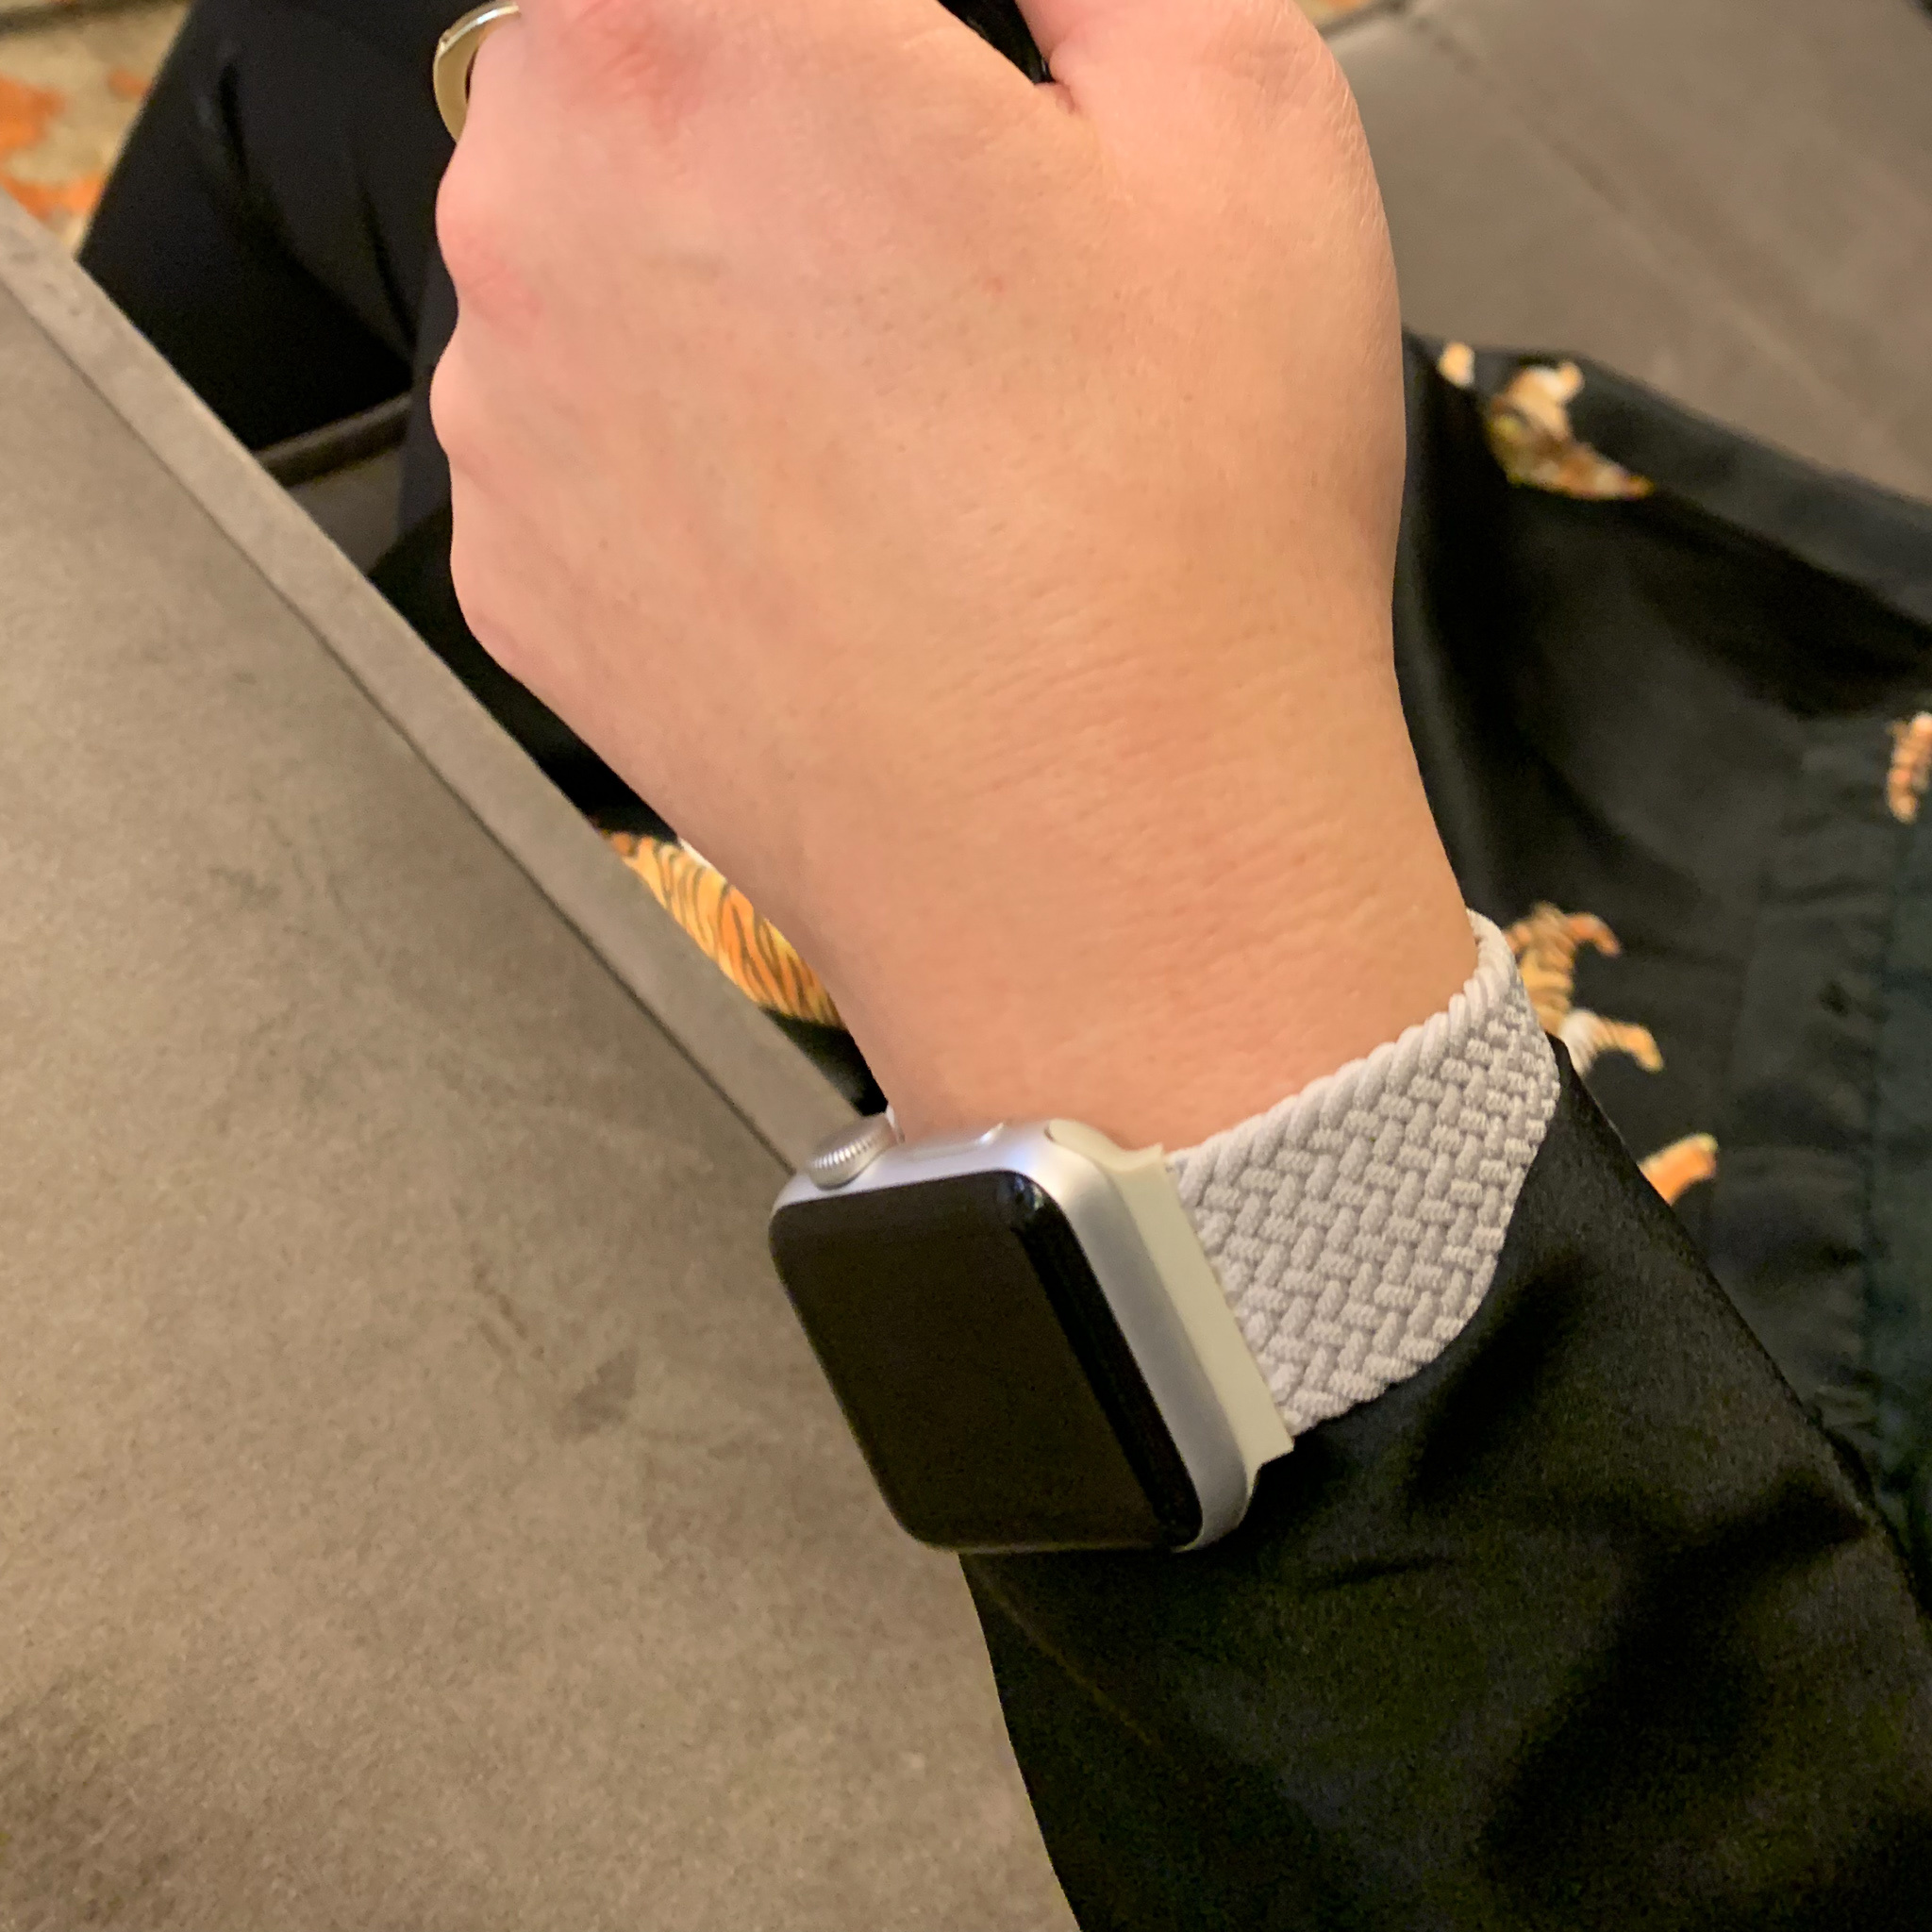 Bracelet nylon Boucle unique tressé Apple Watch - gris clair